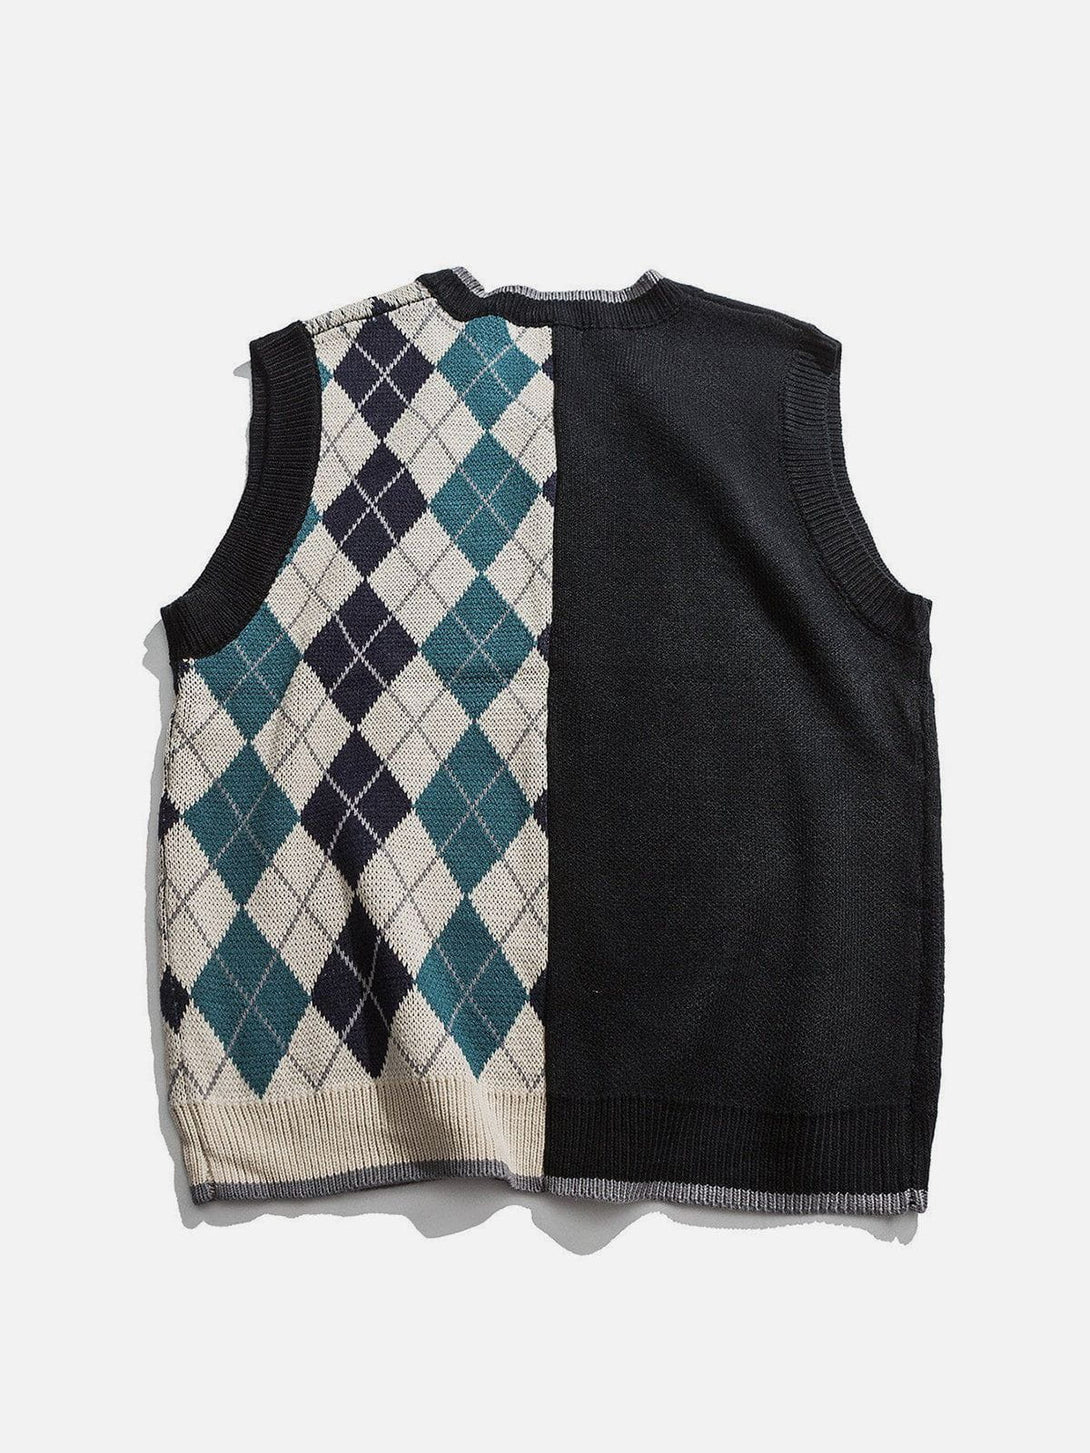 Aelfric Eden Vintage Stitching Diamond Pattern Sweater Vest – Aelfric eden